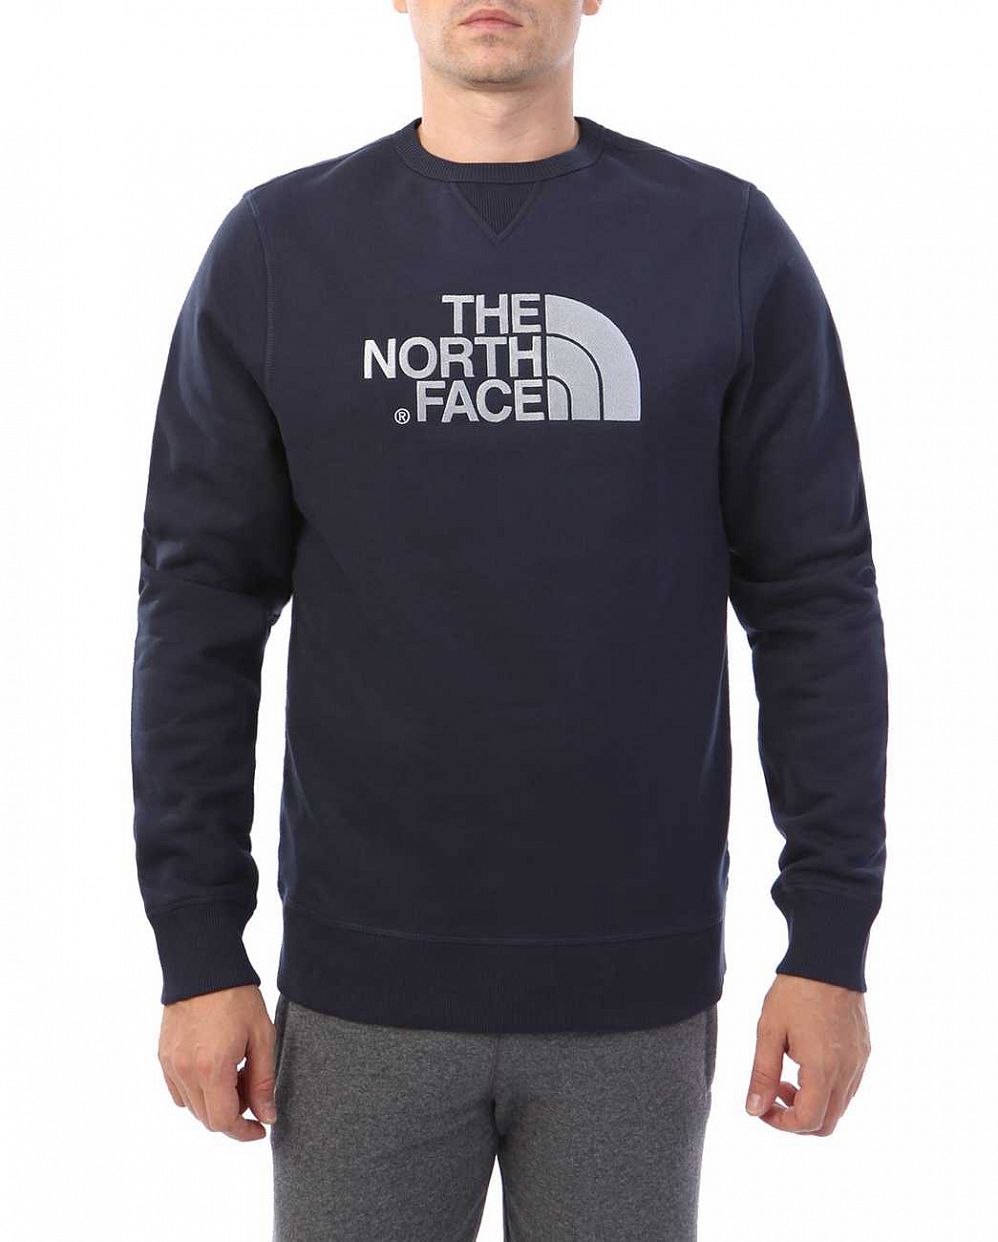 Толстовка мужская свитшот хлопок The North Face Drew Peak Urban Navy отзывы